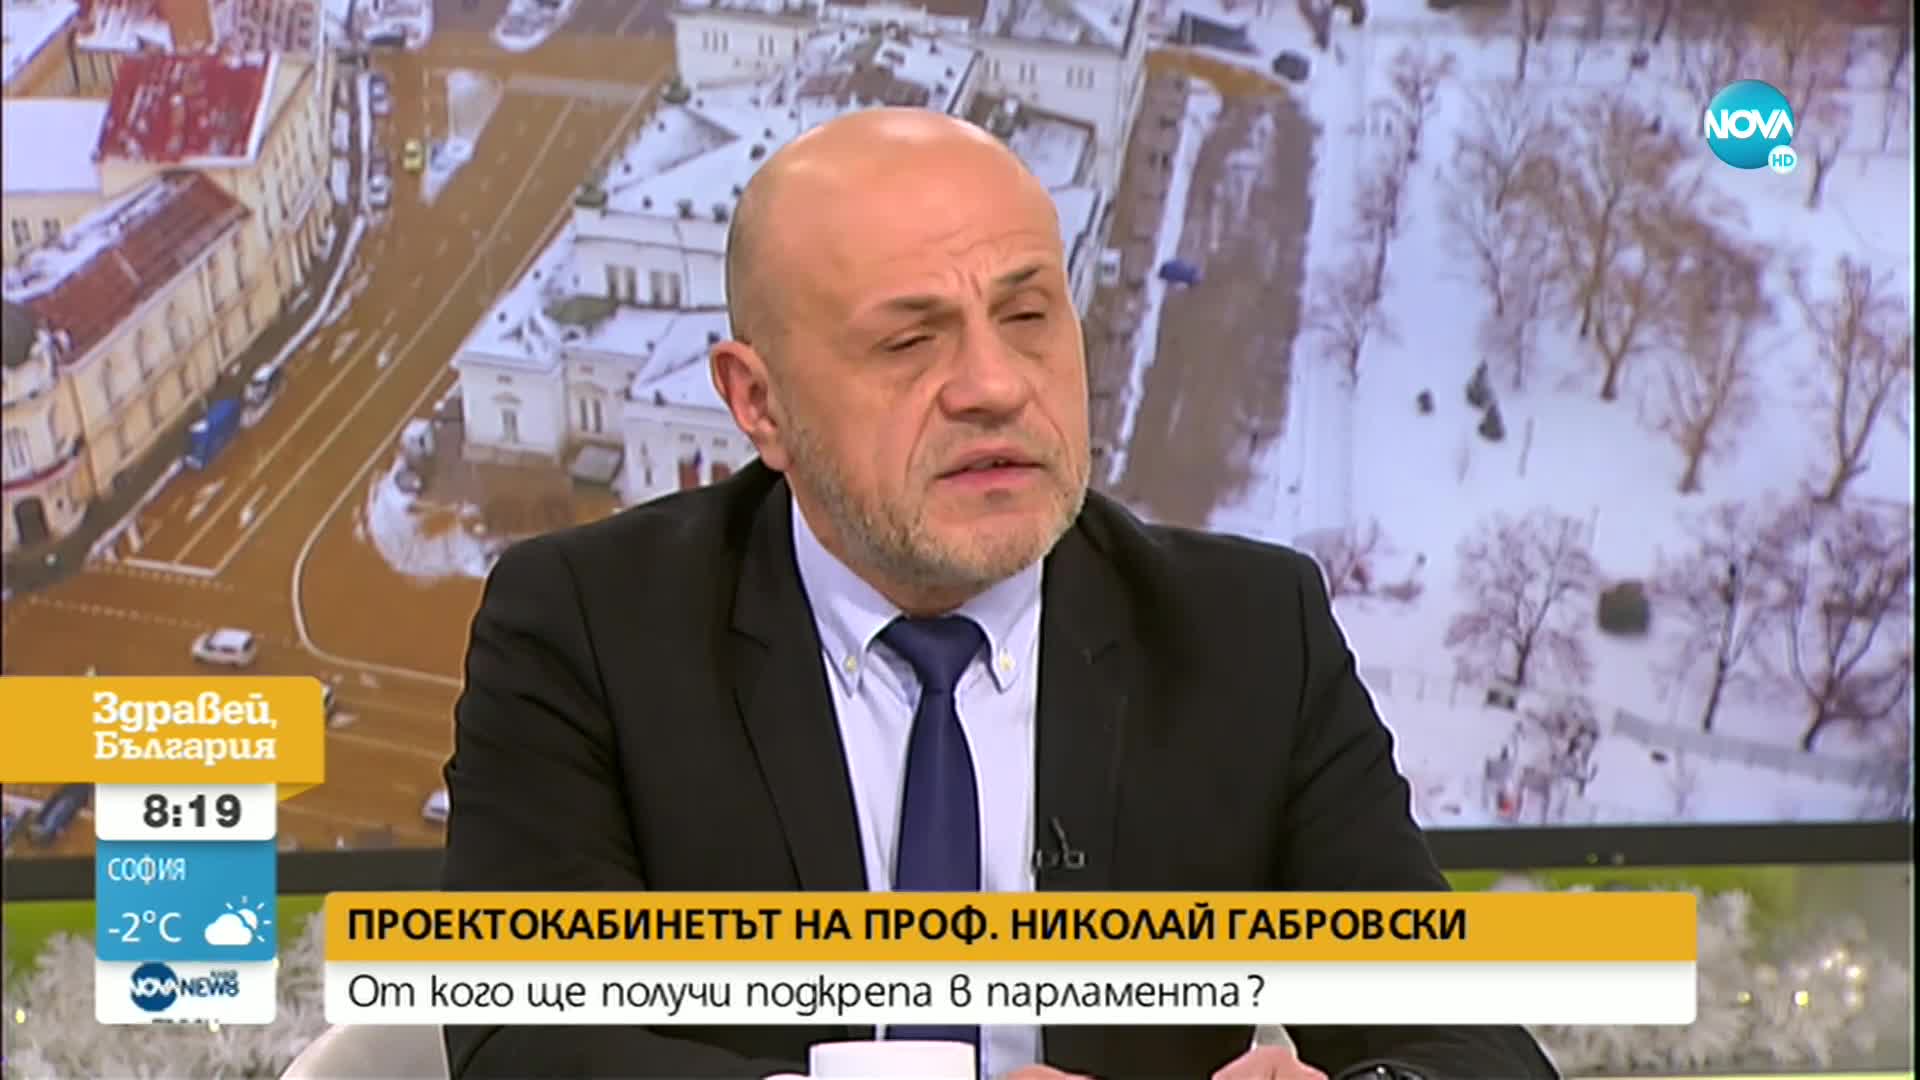 Дончев: Ако не съставим правителство с първия мандат, има 62% вероятност да отидем на избори